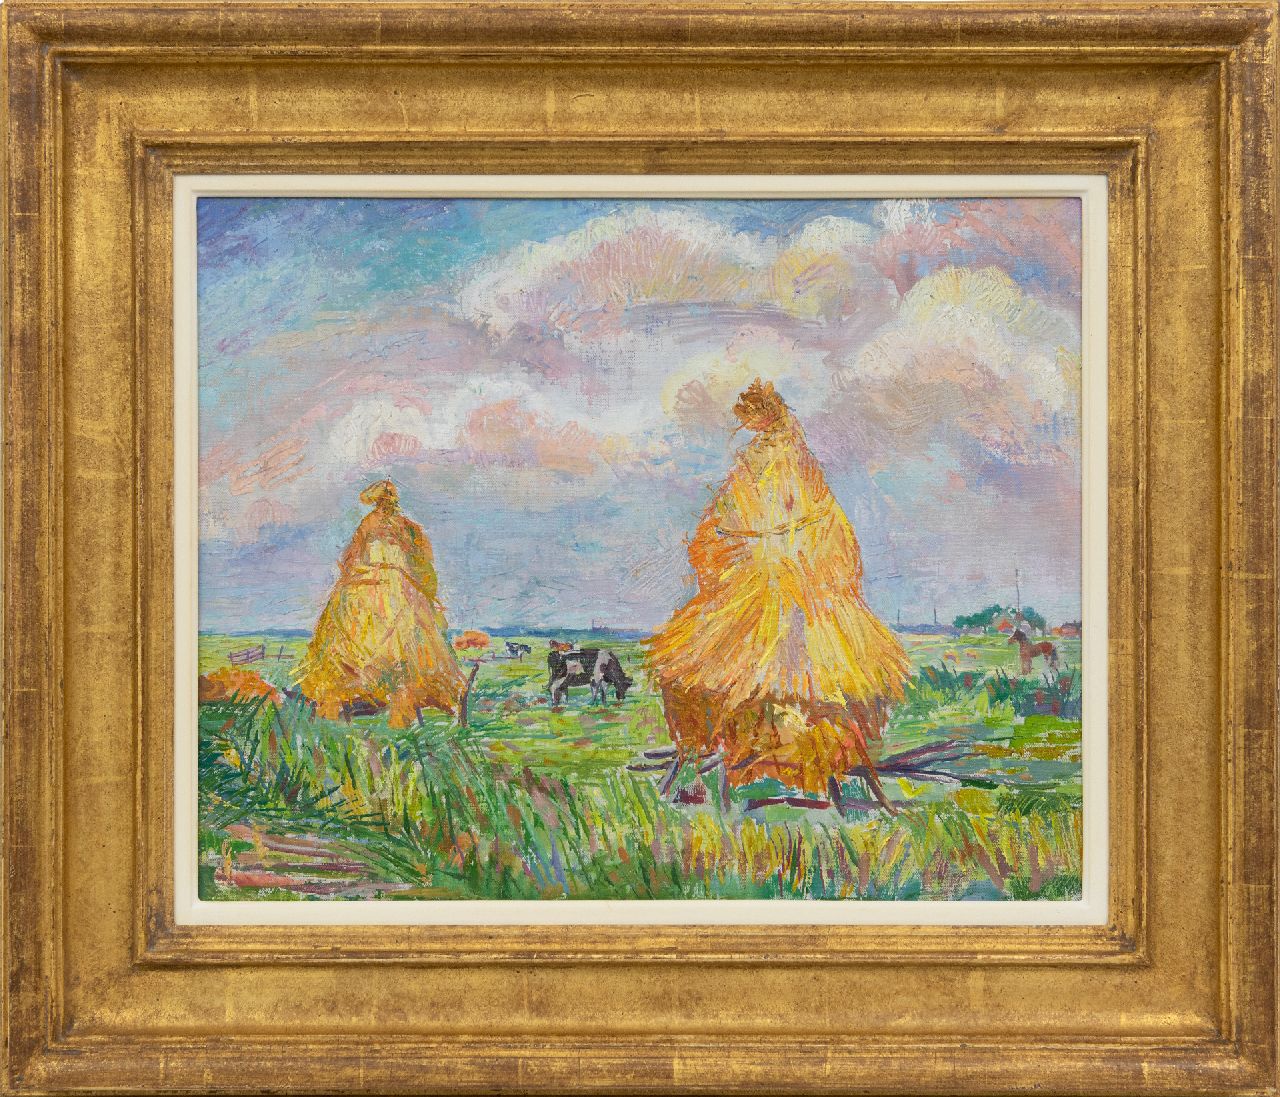 Pijpers E.E.  | 'Edith' Elizabeth Pijpers, Hooimijten in het veld, olieverf op doek 36,9 x 45,8 cm